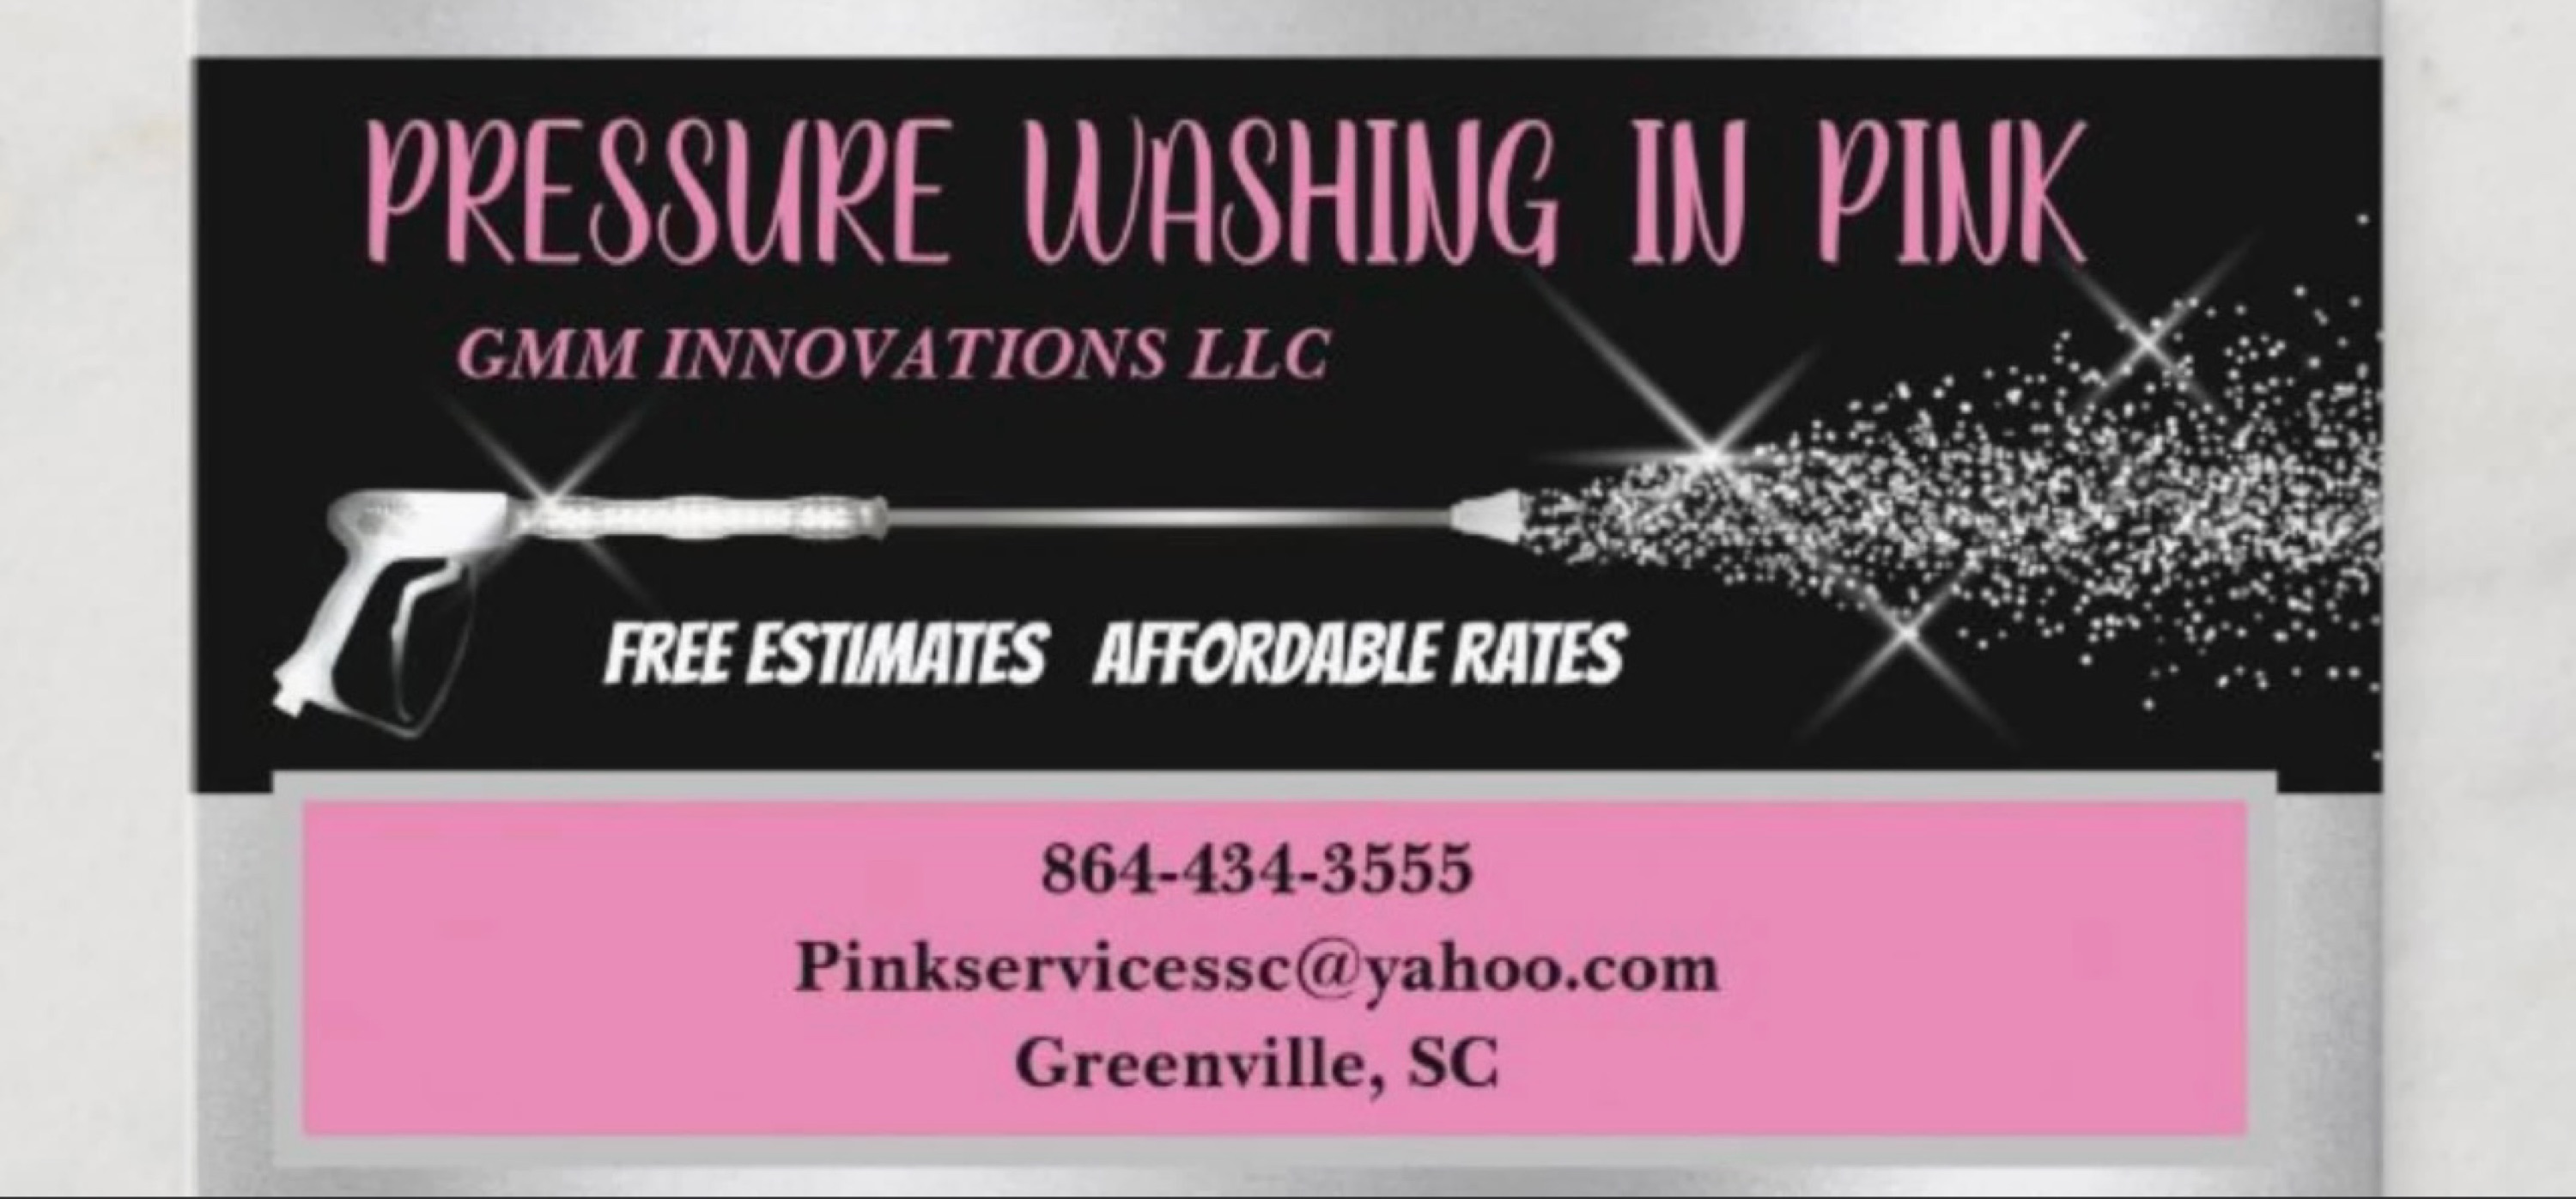 Pressure Washing in Pink Logo